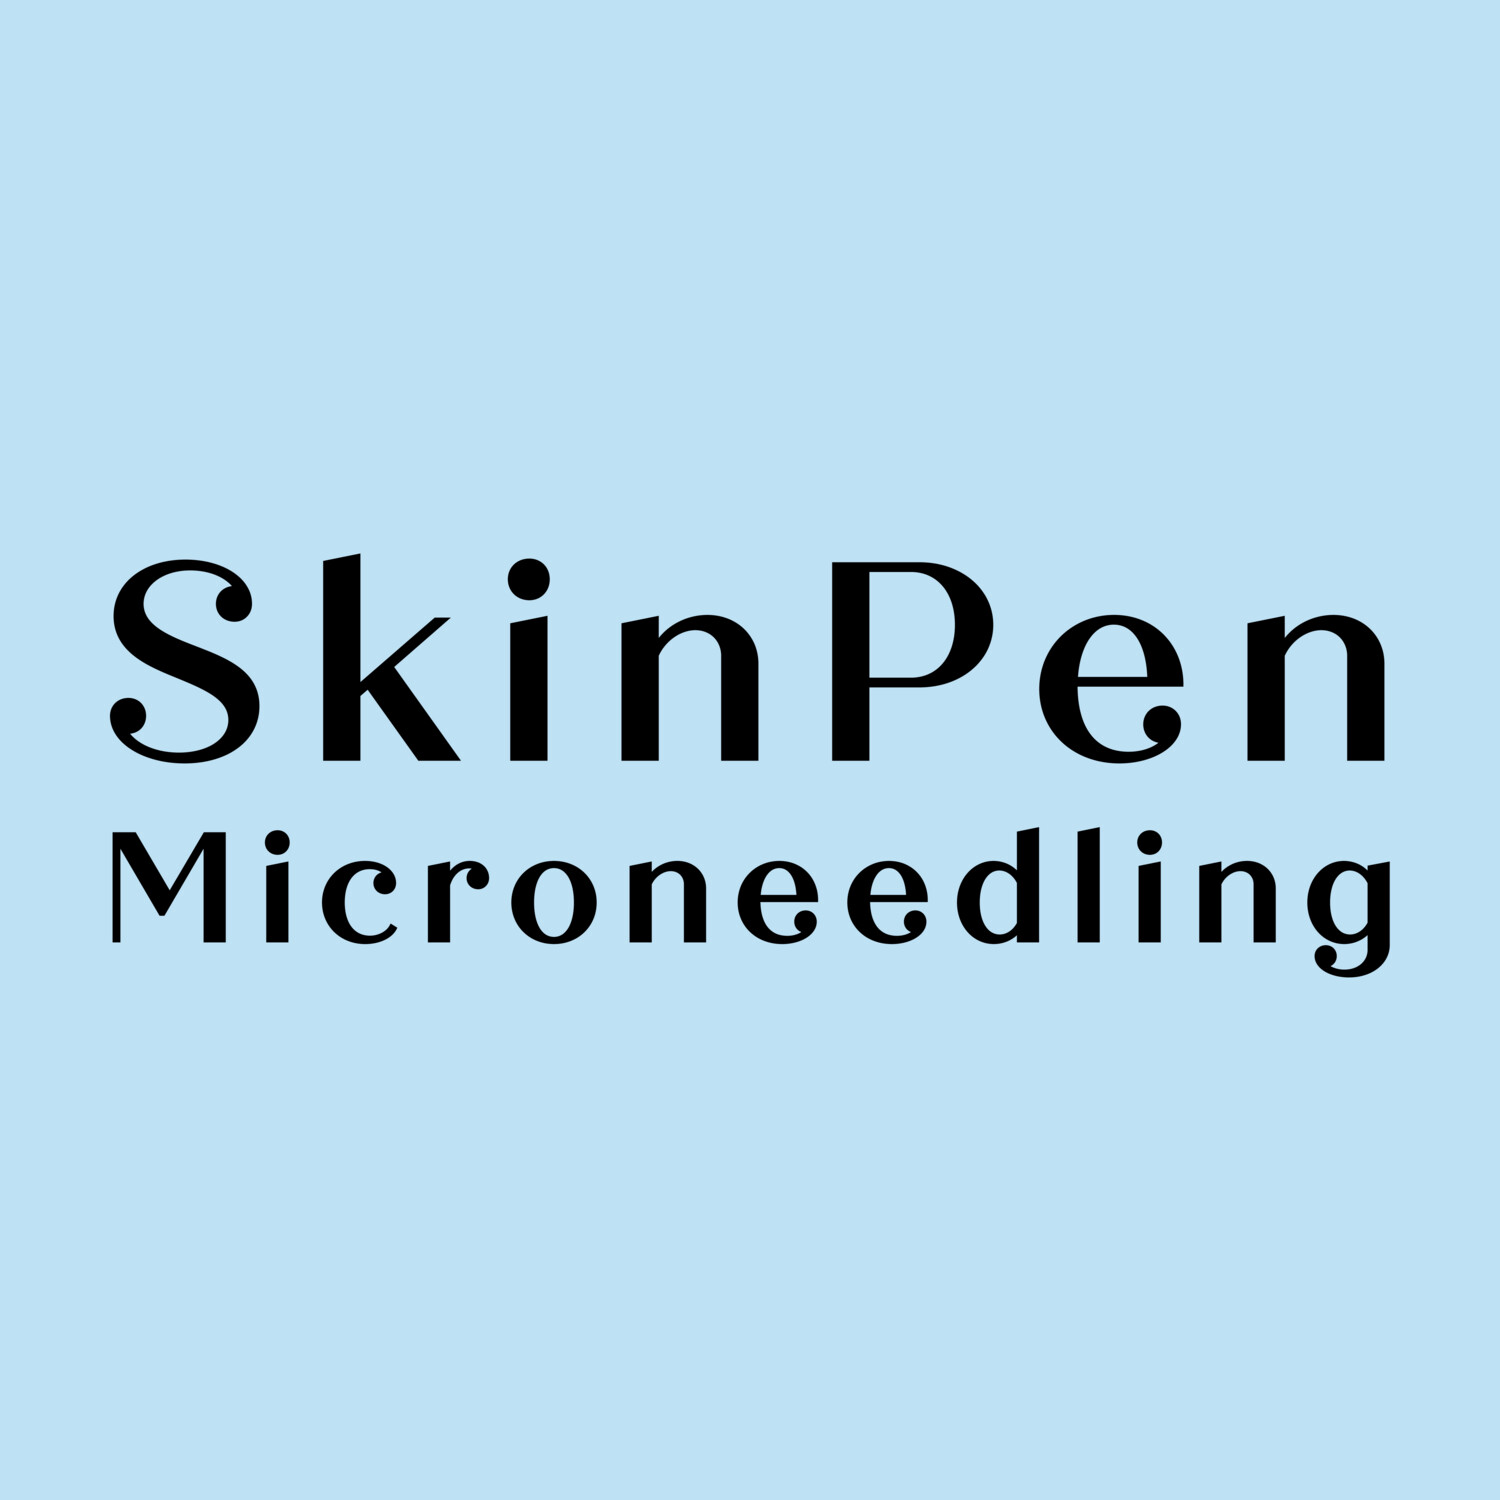 SkinPen Microneedling